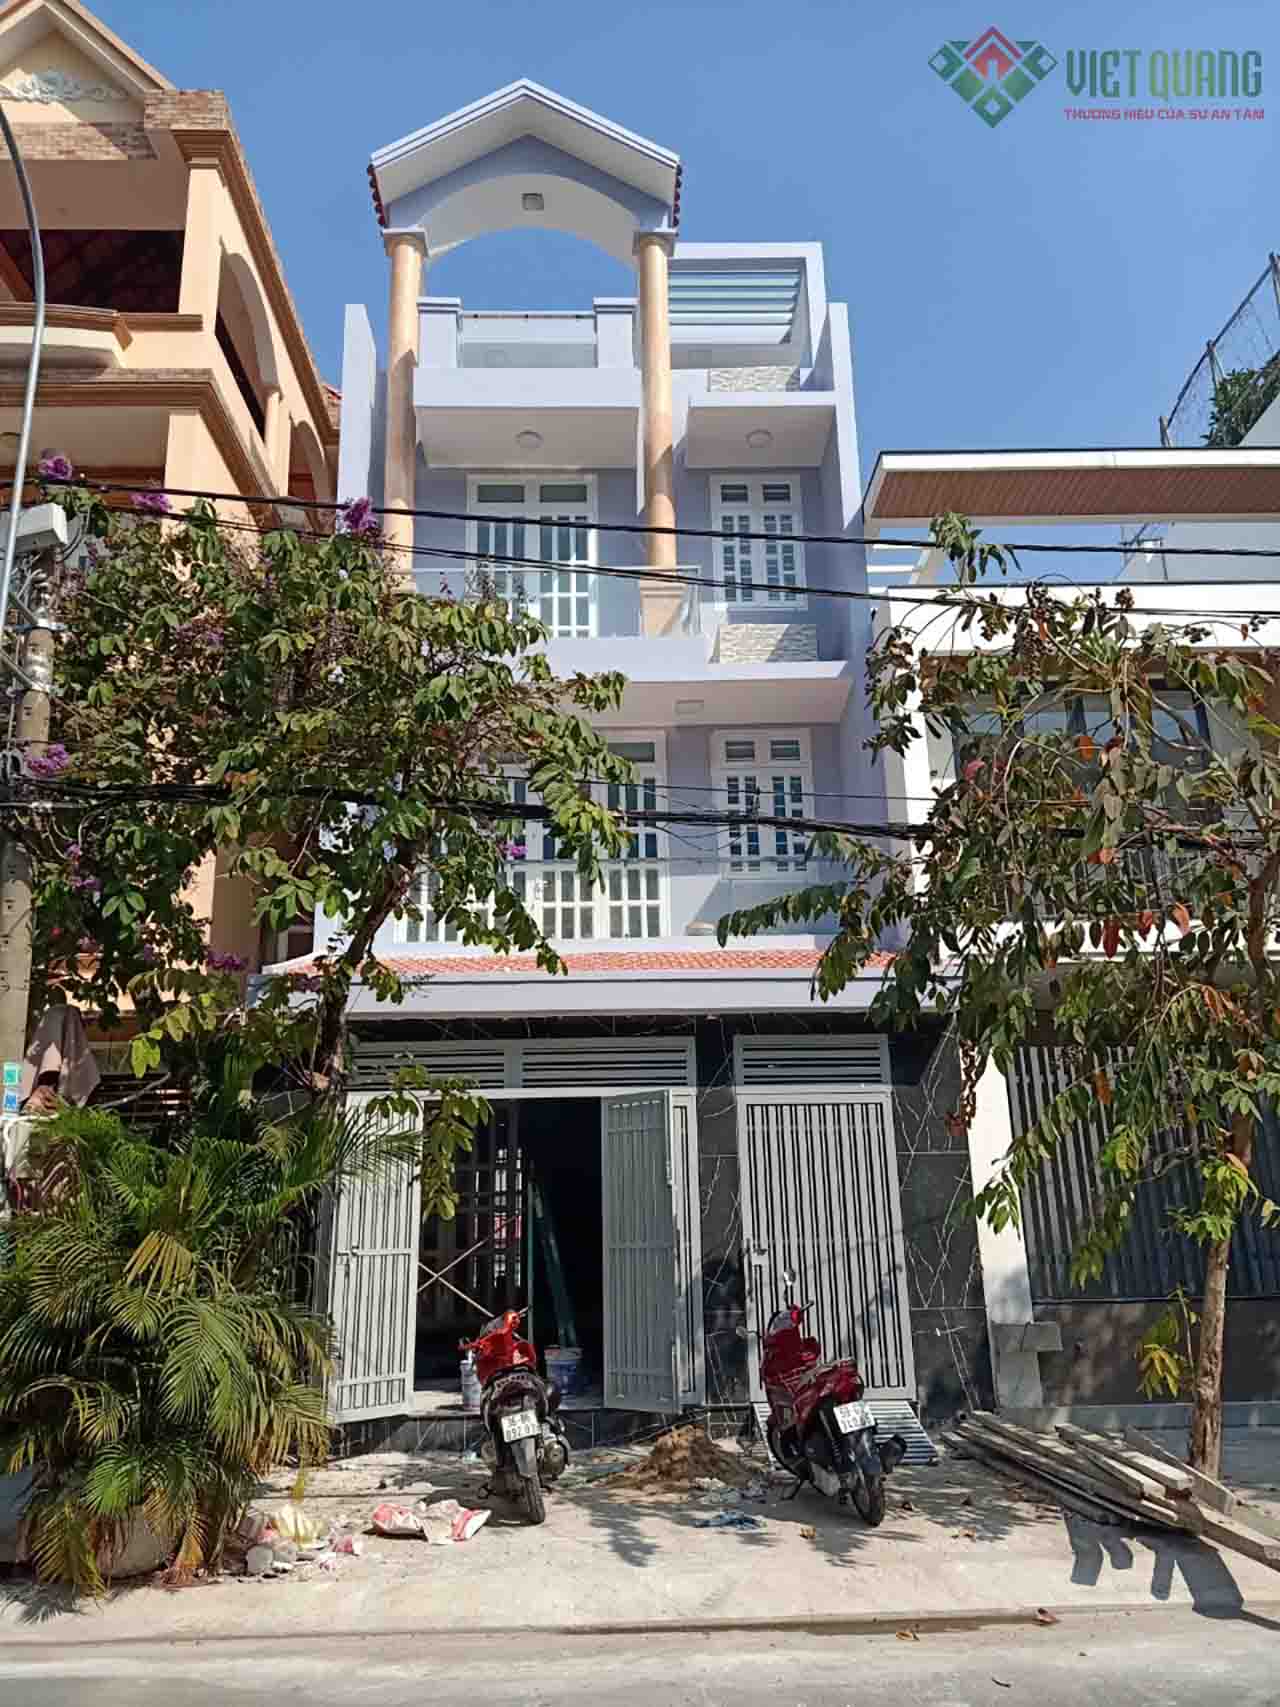 Việt Quang thi công xây dựng nhà gói ngôi nhà phố 4 tầng của gia đình chị Bình tại phường Tân Phong quận 7 năm 2018